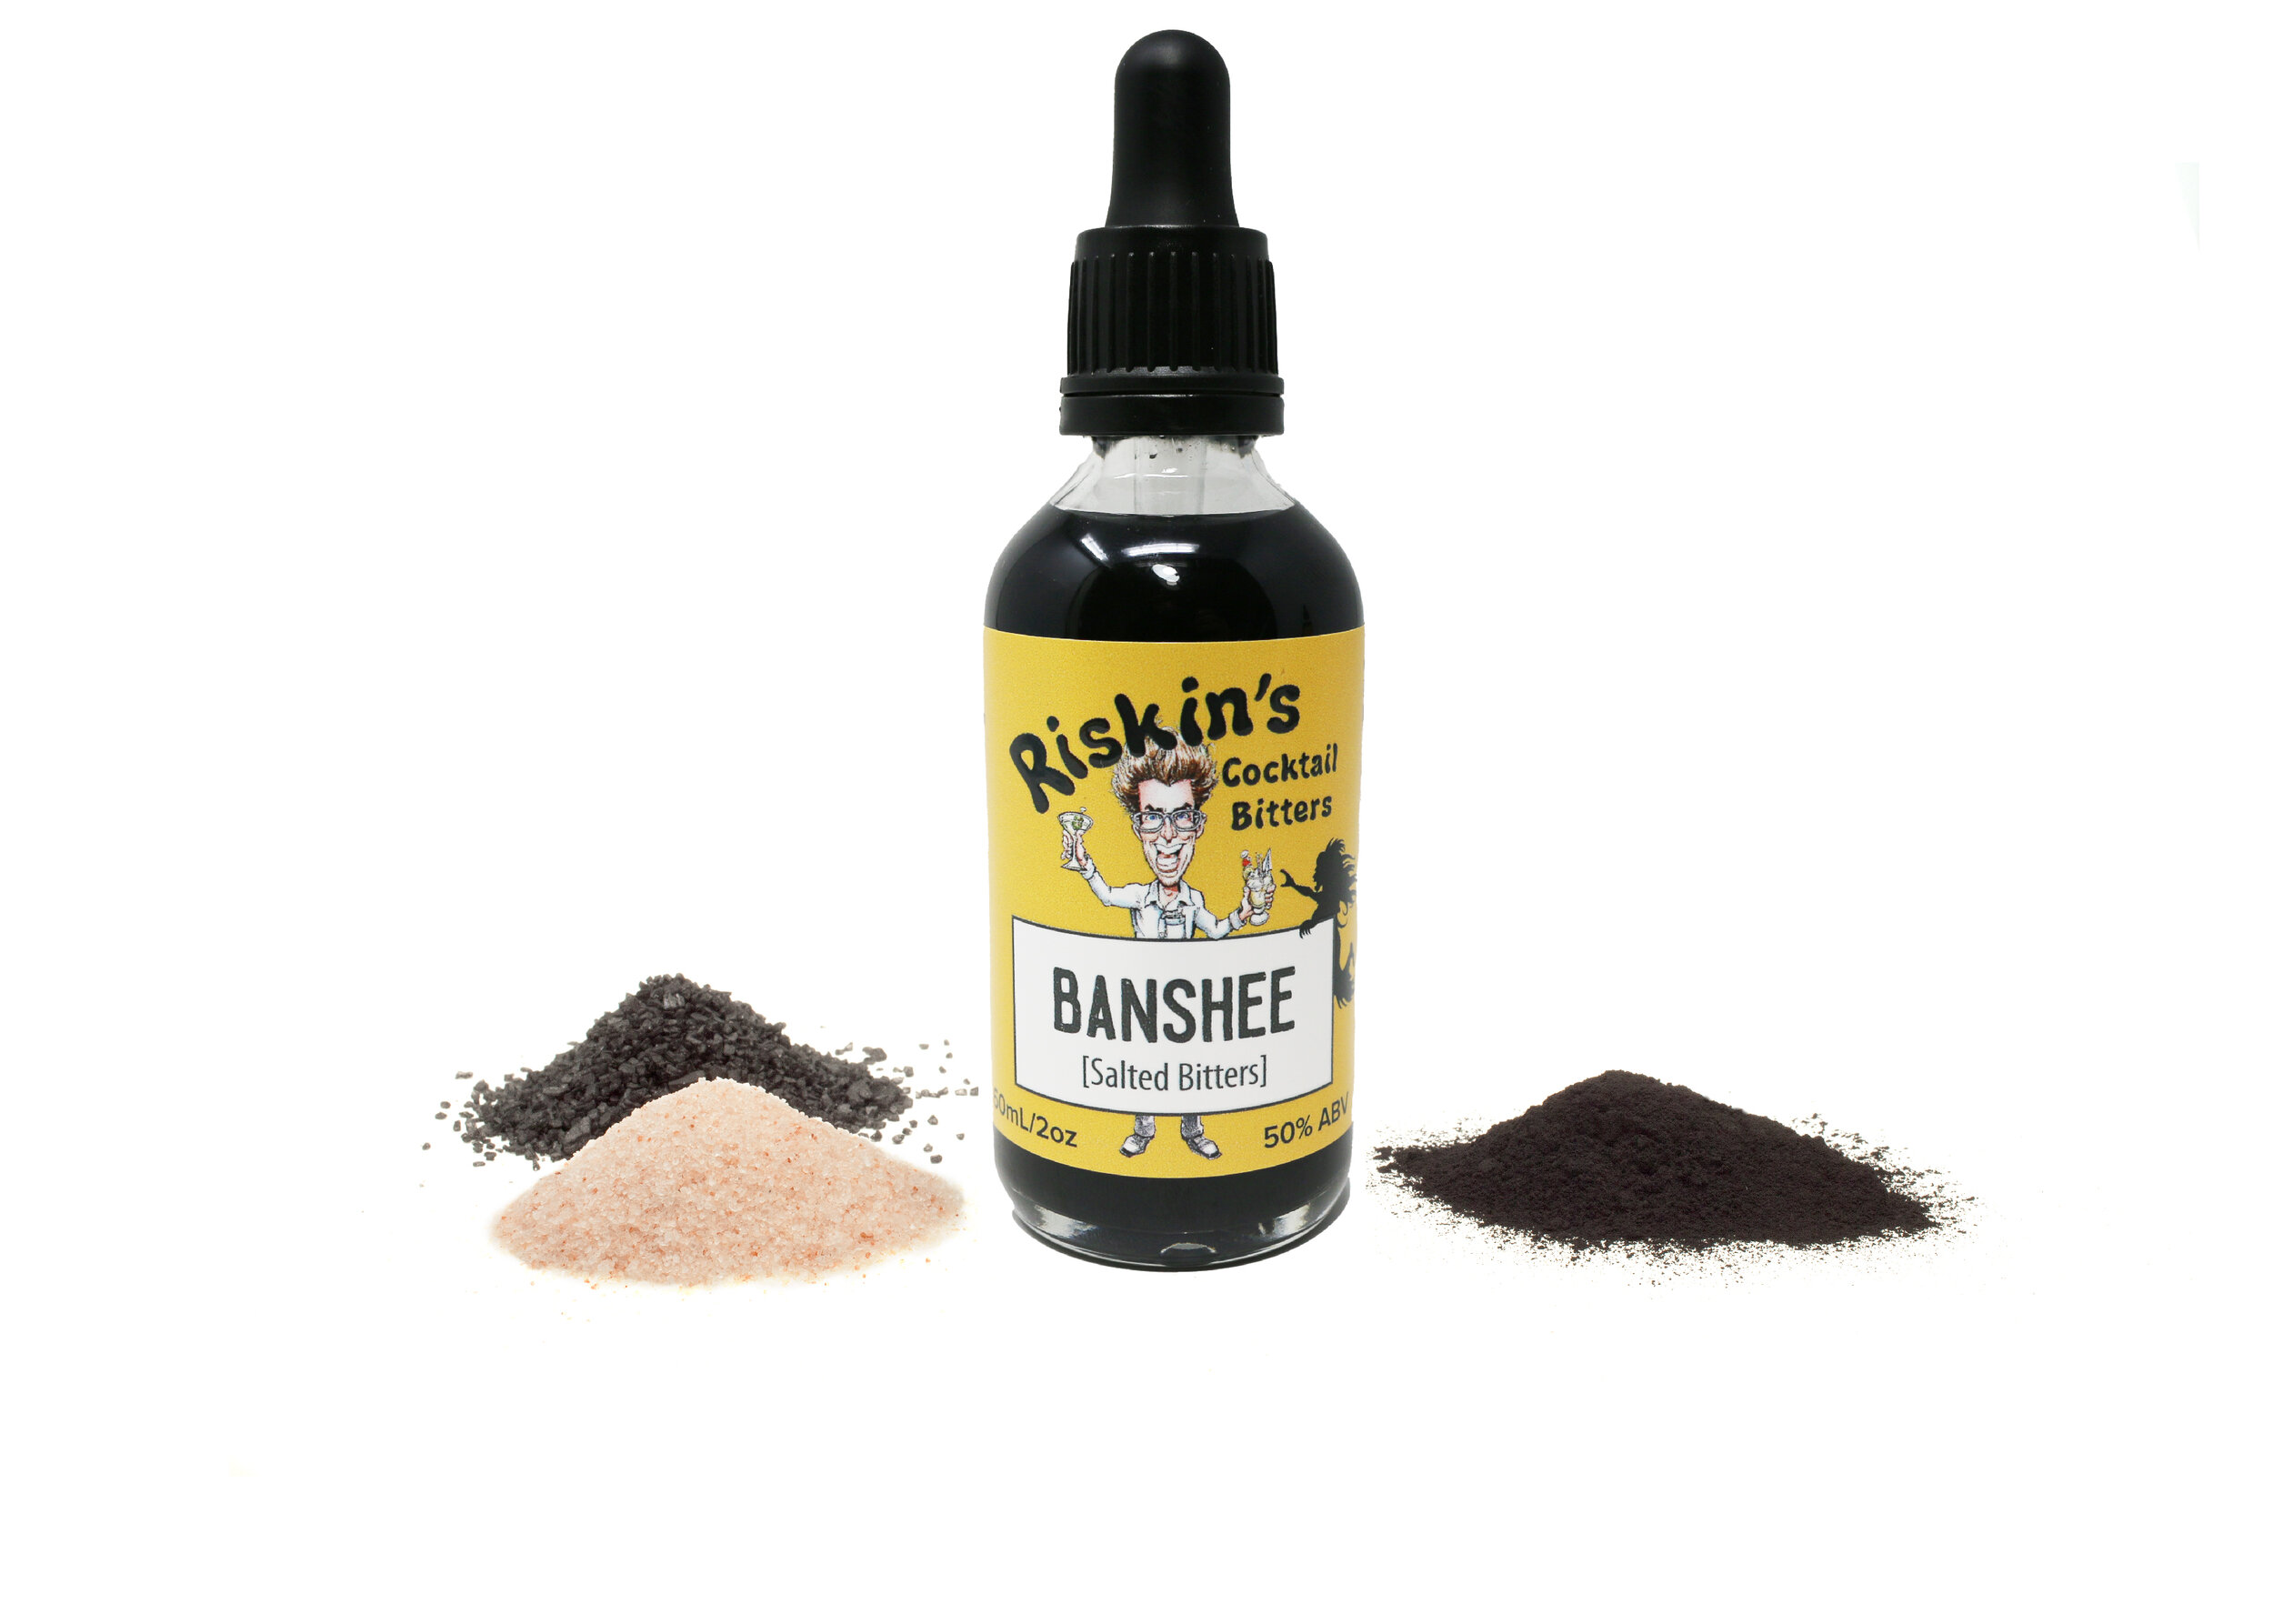 banshee with ingredients.jpg